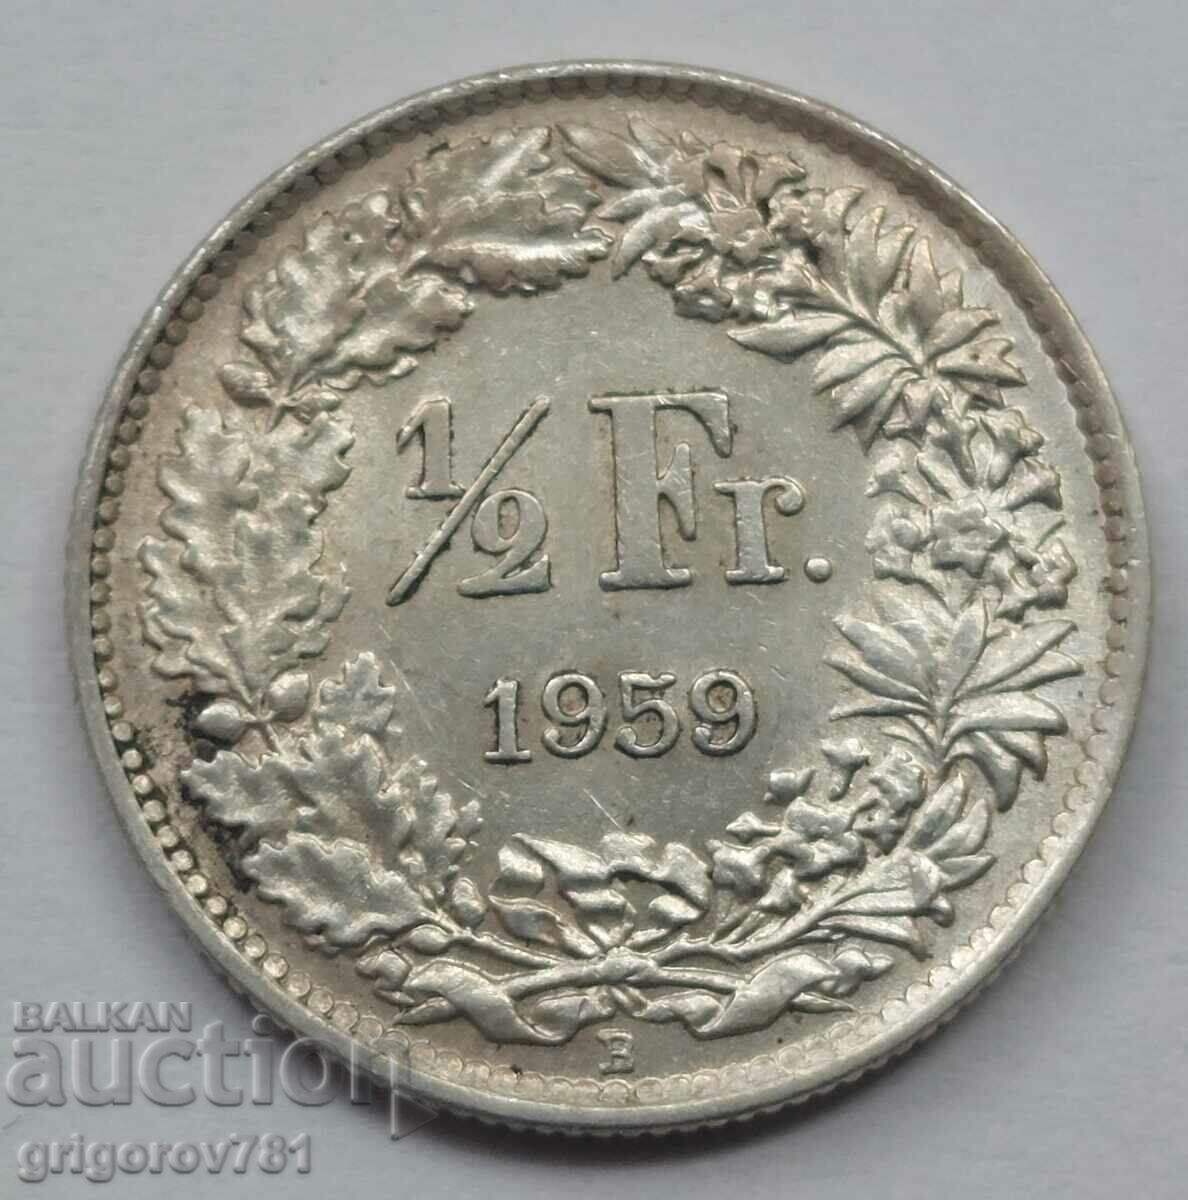 1/2 Φράγκο Ασημένιο Ελβετία 1959 B - Ασημένιο νόμισμα #127